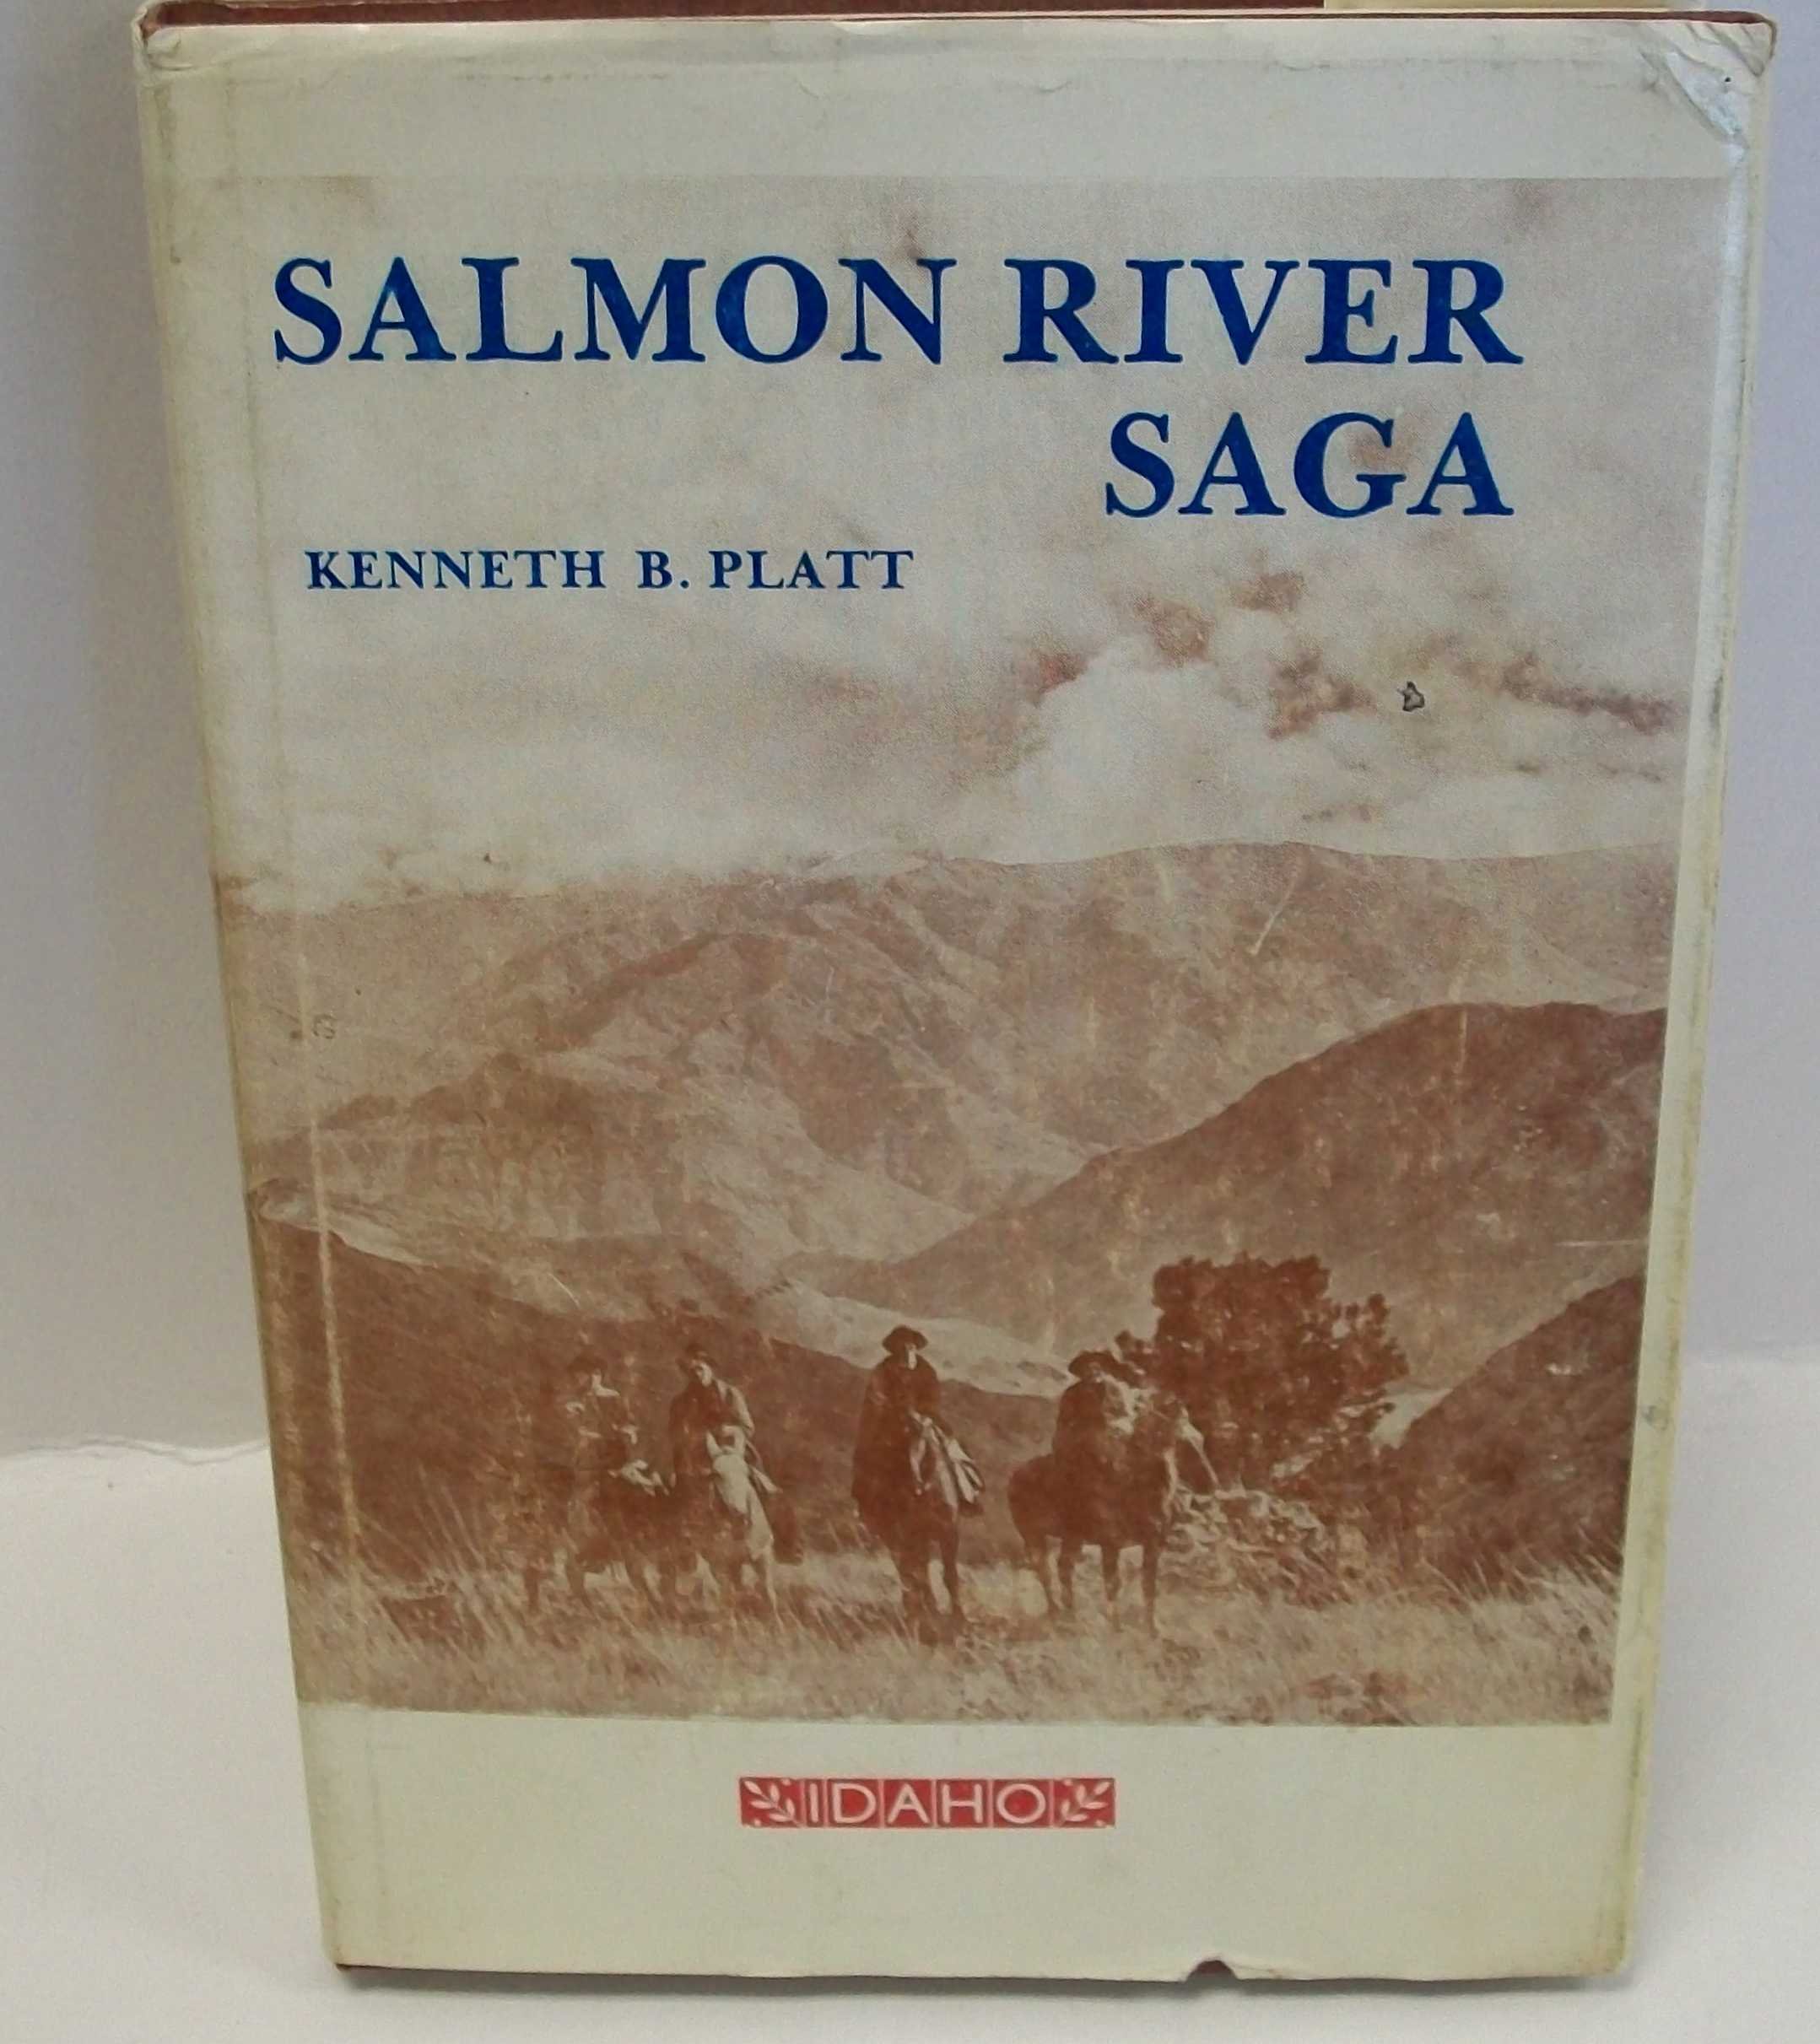 Salmon River saga (book cover)